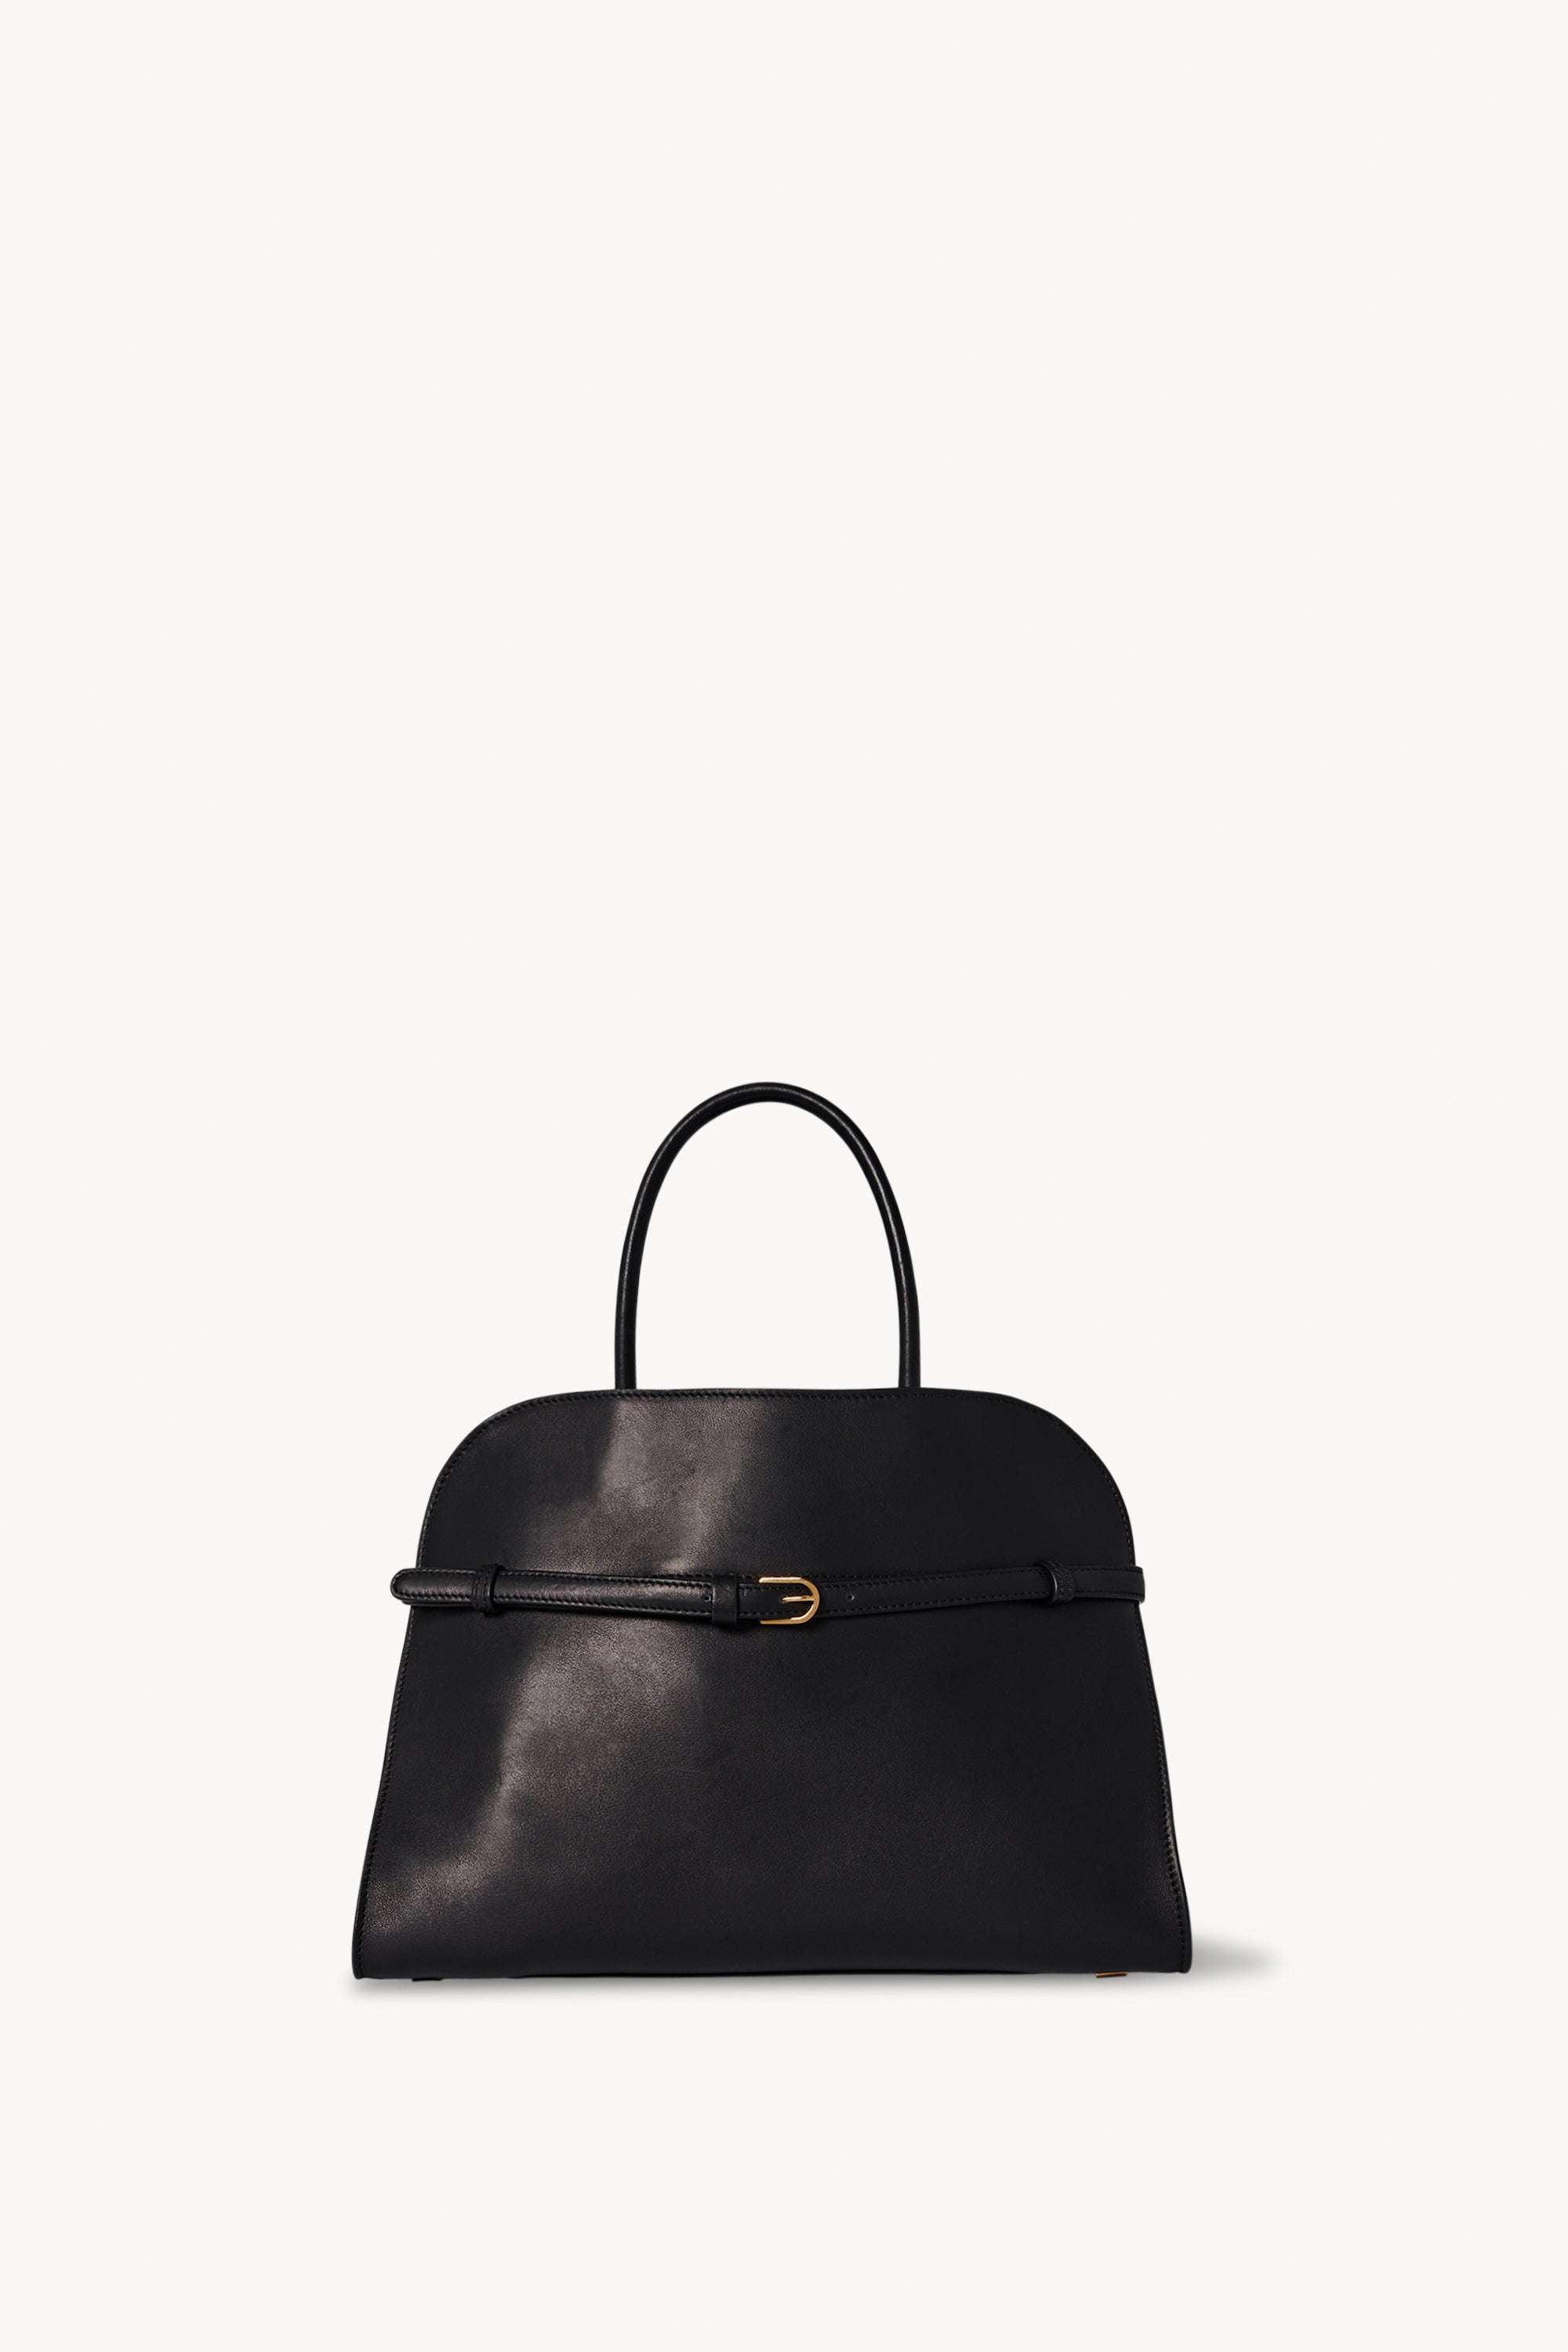 Margaux Belt 12 Bag in Leather - 1